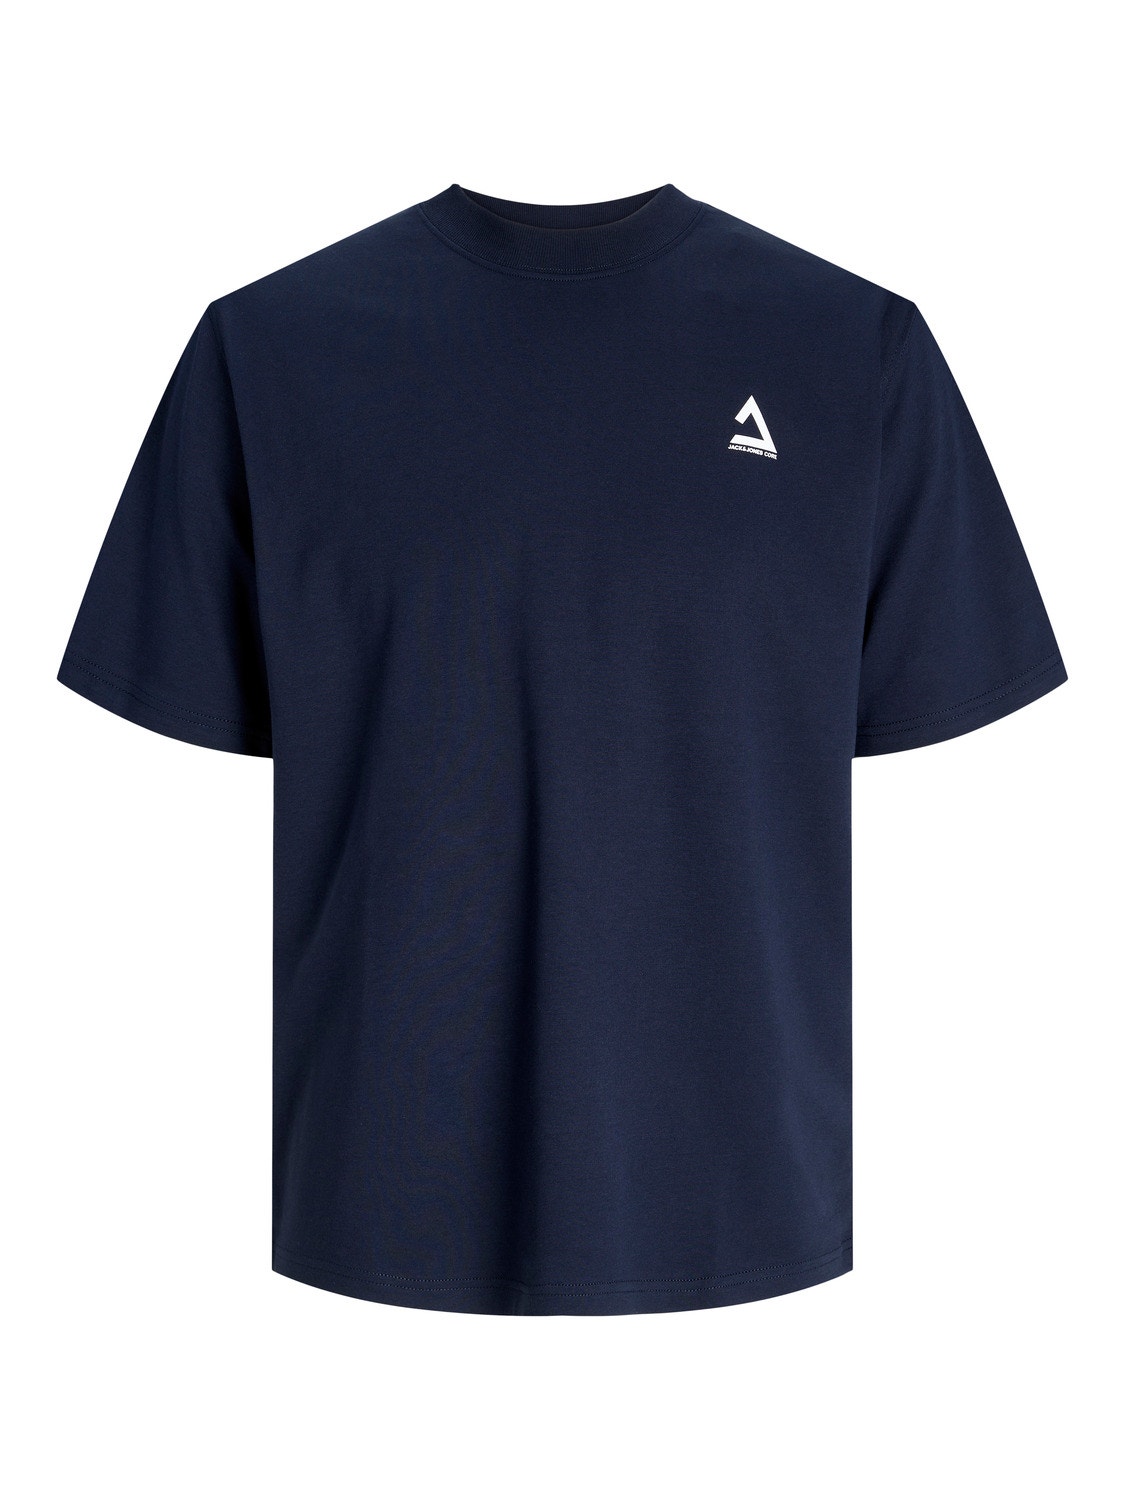 Jack & Jones T-shirt Imprimé Col rond -Navy Blazer - 12258622